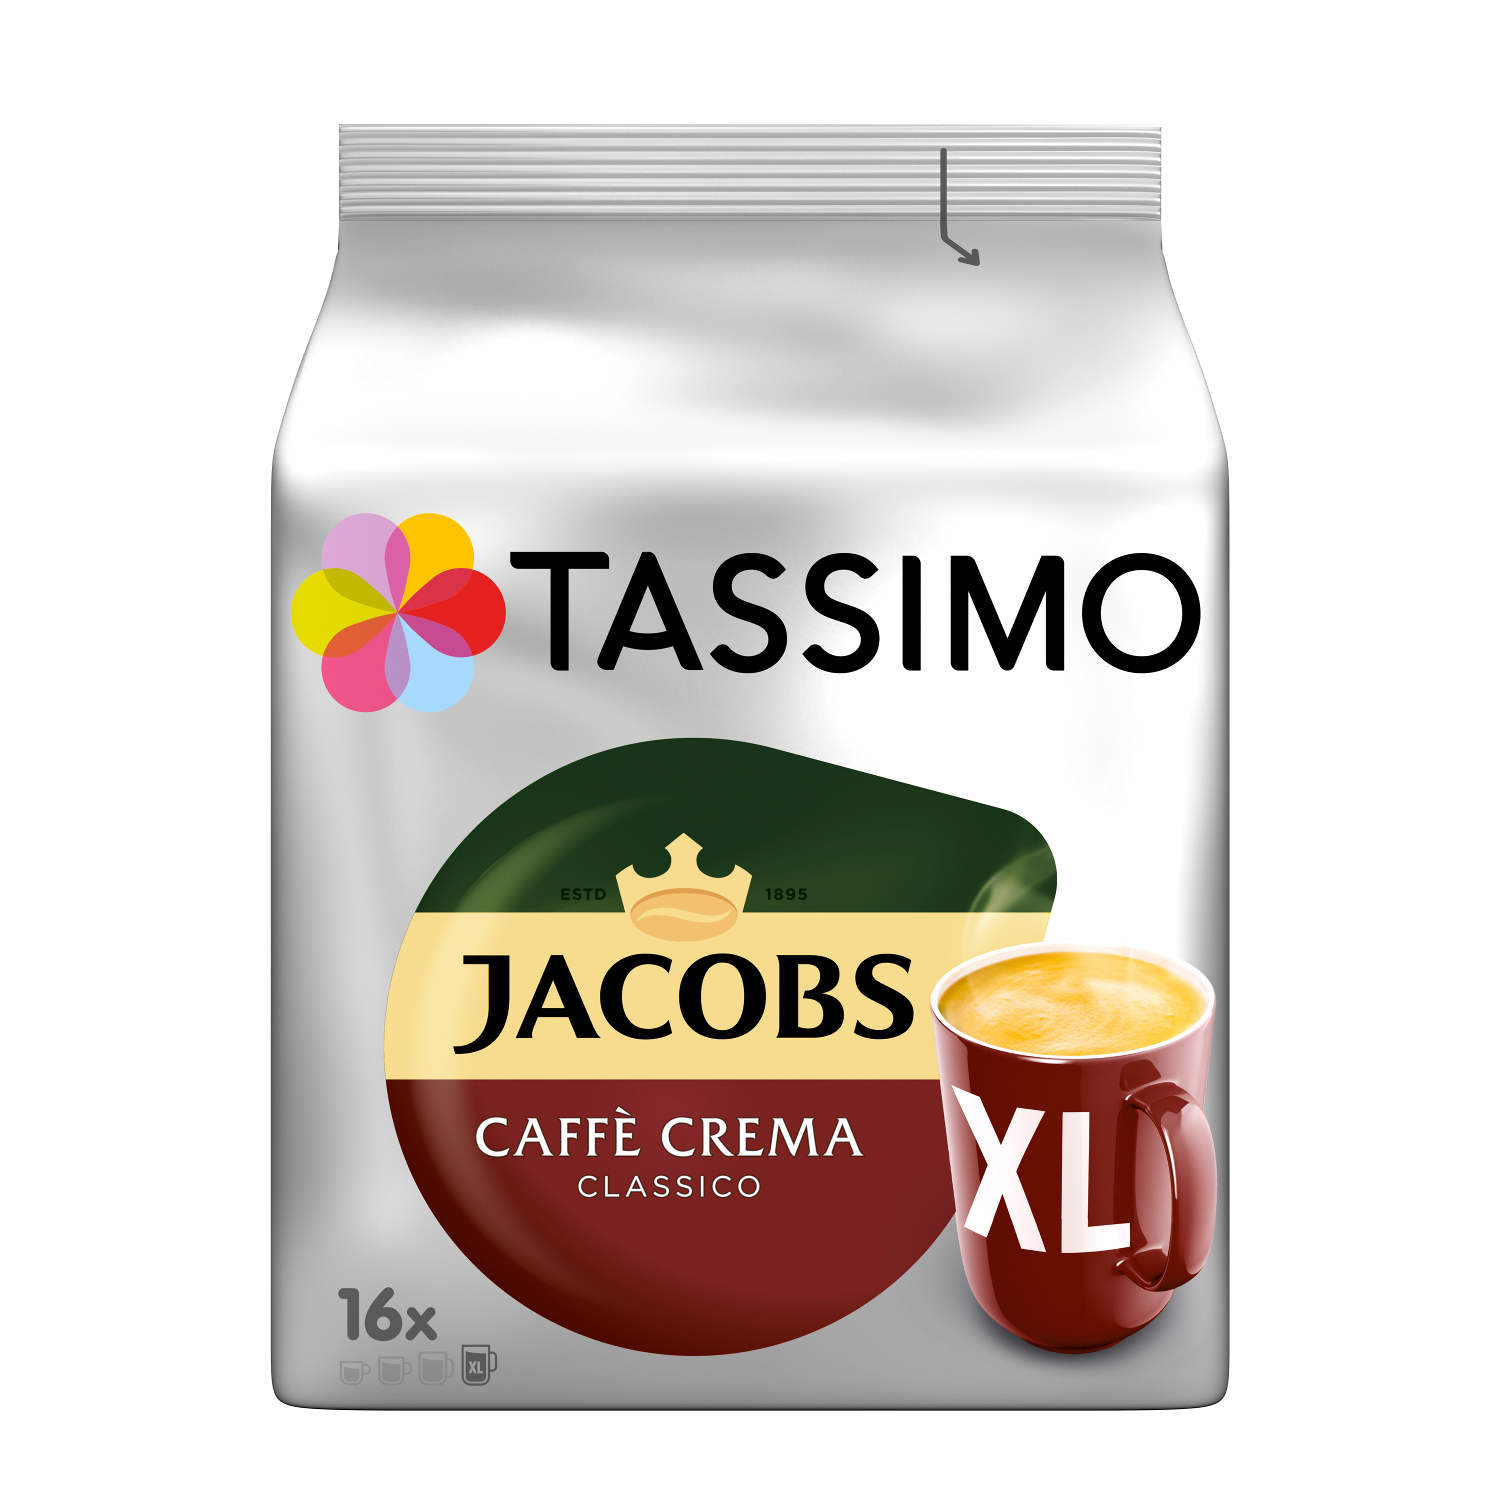 TASSIMO Vielfaltspaket XL Becherportionen Morning 5 Intenso Krönung Kaffeekapseln Café (Tassimo Sorten Maschine System)) Crema (T-Disc Mild